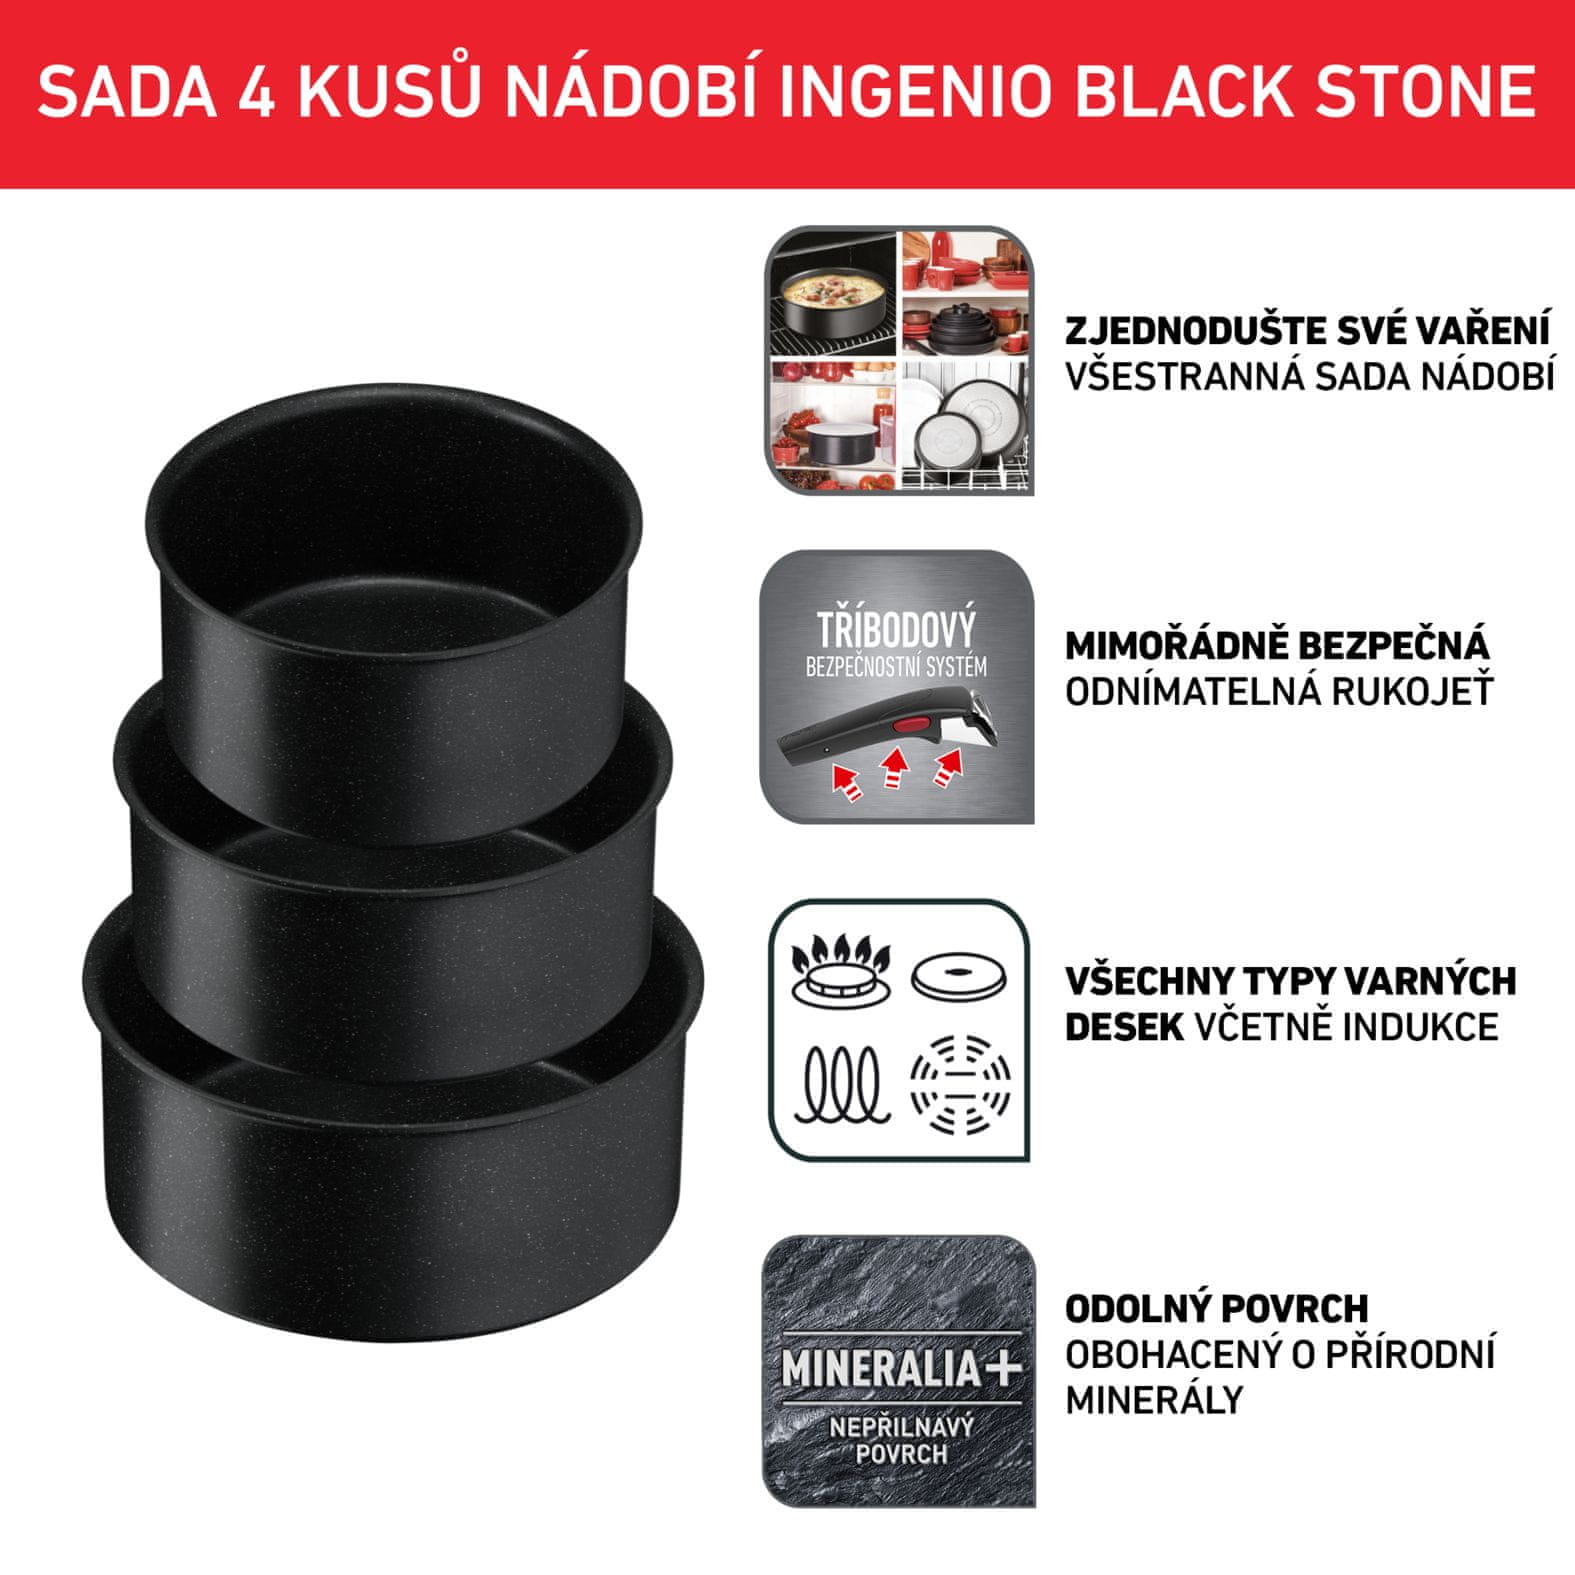 Tefal sada nádobí Ingenio Black Stone 4 ks L3998902